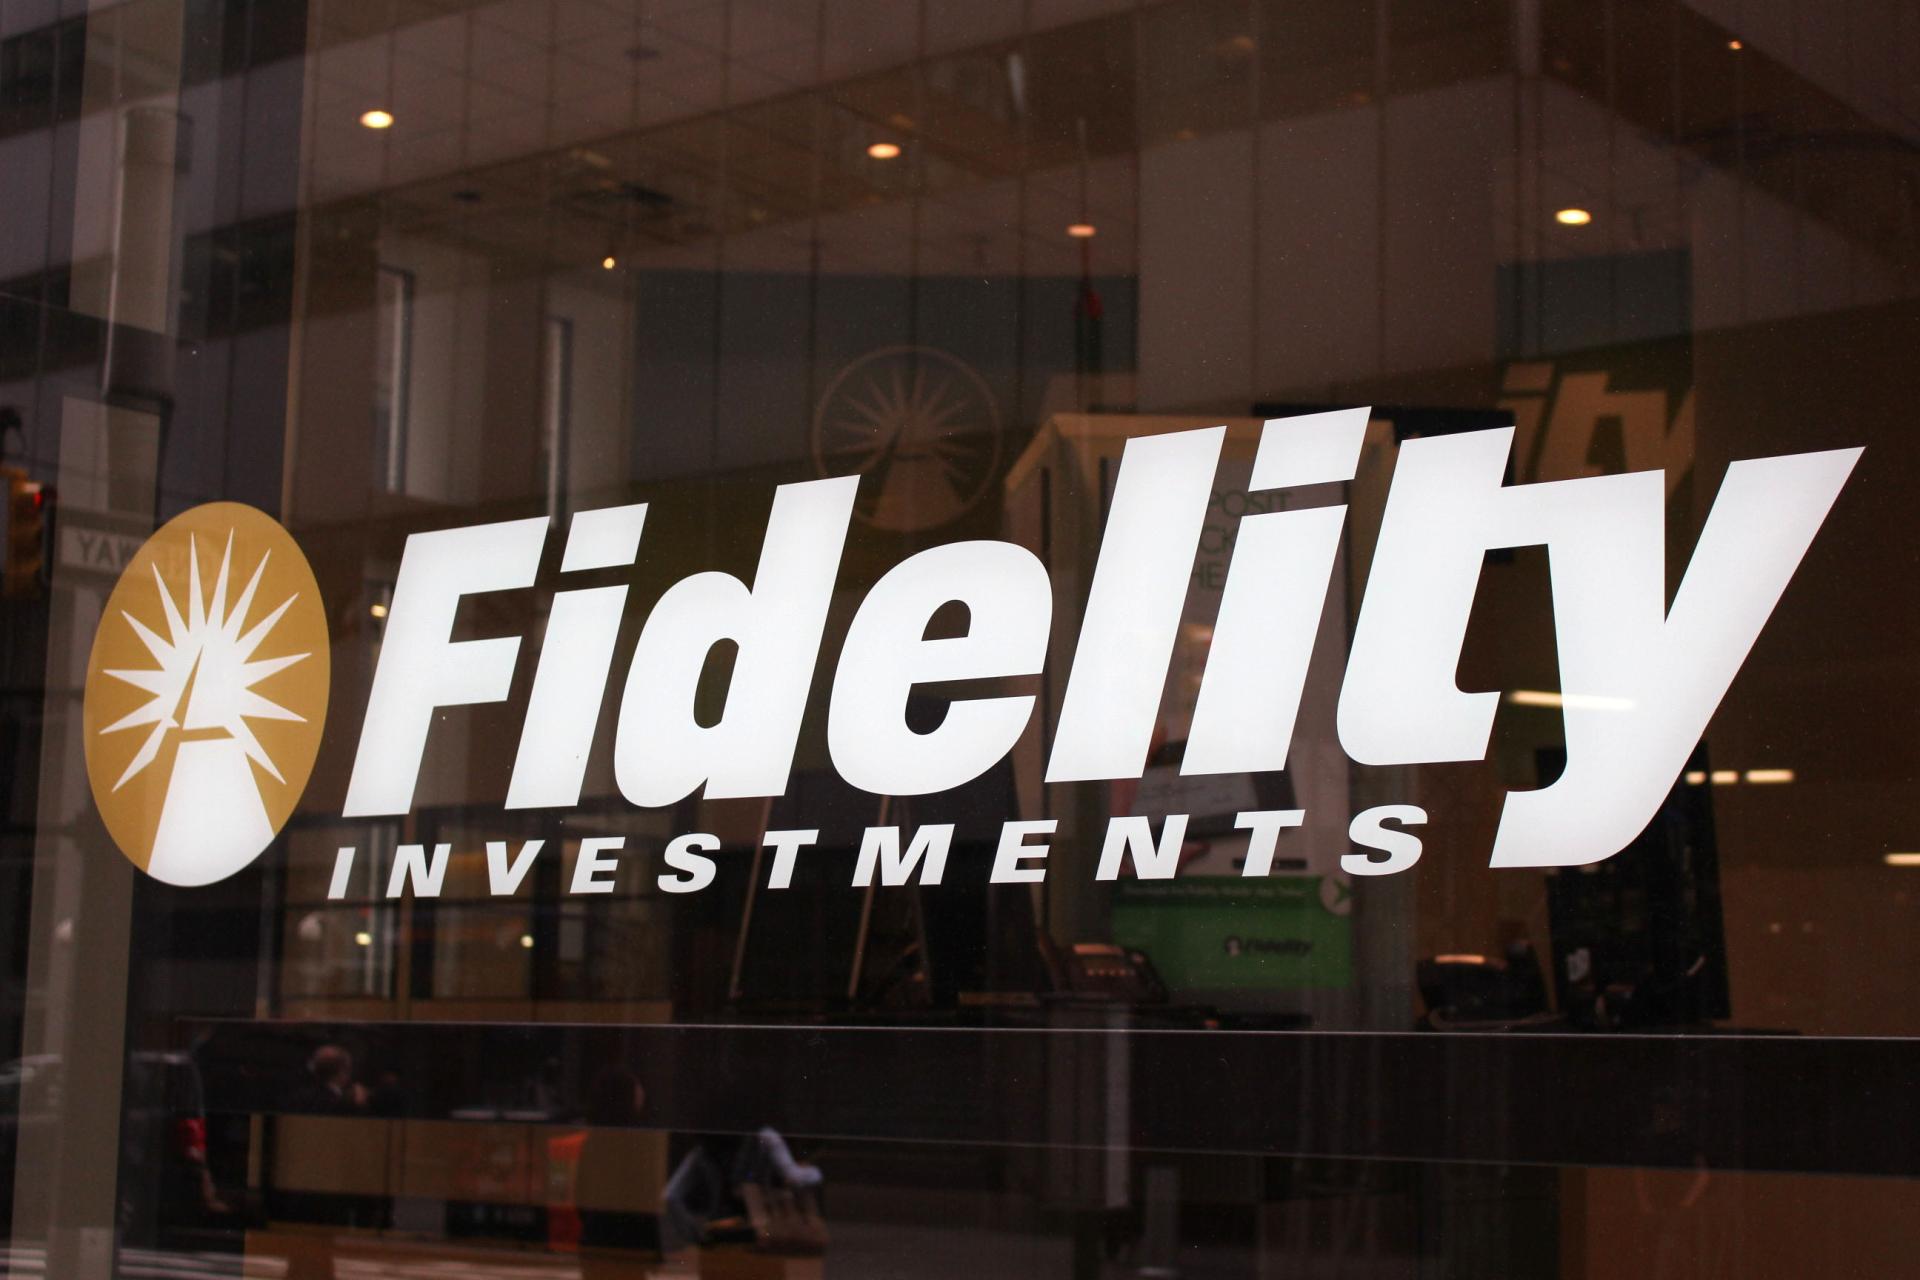 El Fidelity BTC ETF registró un fuerte flujo de inversión ayer, atrayendo la impresionante suma de 208 millones de dólares. Este rendimiento excepcional supera las salidas experimentadas por Grayscale, confirmando el creciente interés de los inversores en el mercado de criptomonedas. Con esta destacada captación de capital, Fidelity demuestra una vez más su posición líder en el mundo de las inversiones en bitcoin. El ETF de Fidelity ofrece a los inversores una forma conveniente y segura de acceder y beneficiarse de las fluctuaciones del precio del bitcoin, y su éxito continuo es un claro reflejo de la confianza que los inversores tienen en esta empresa de renombre en el sector financiero